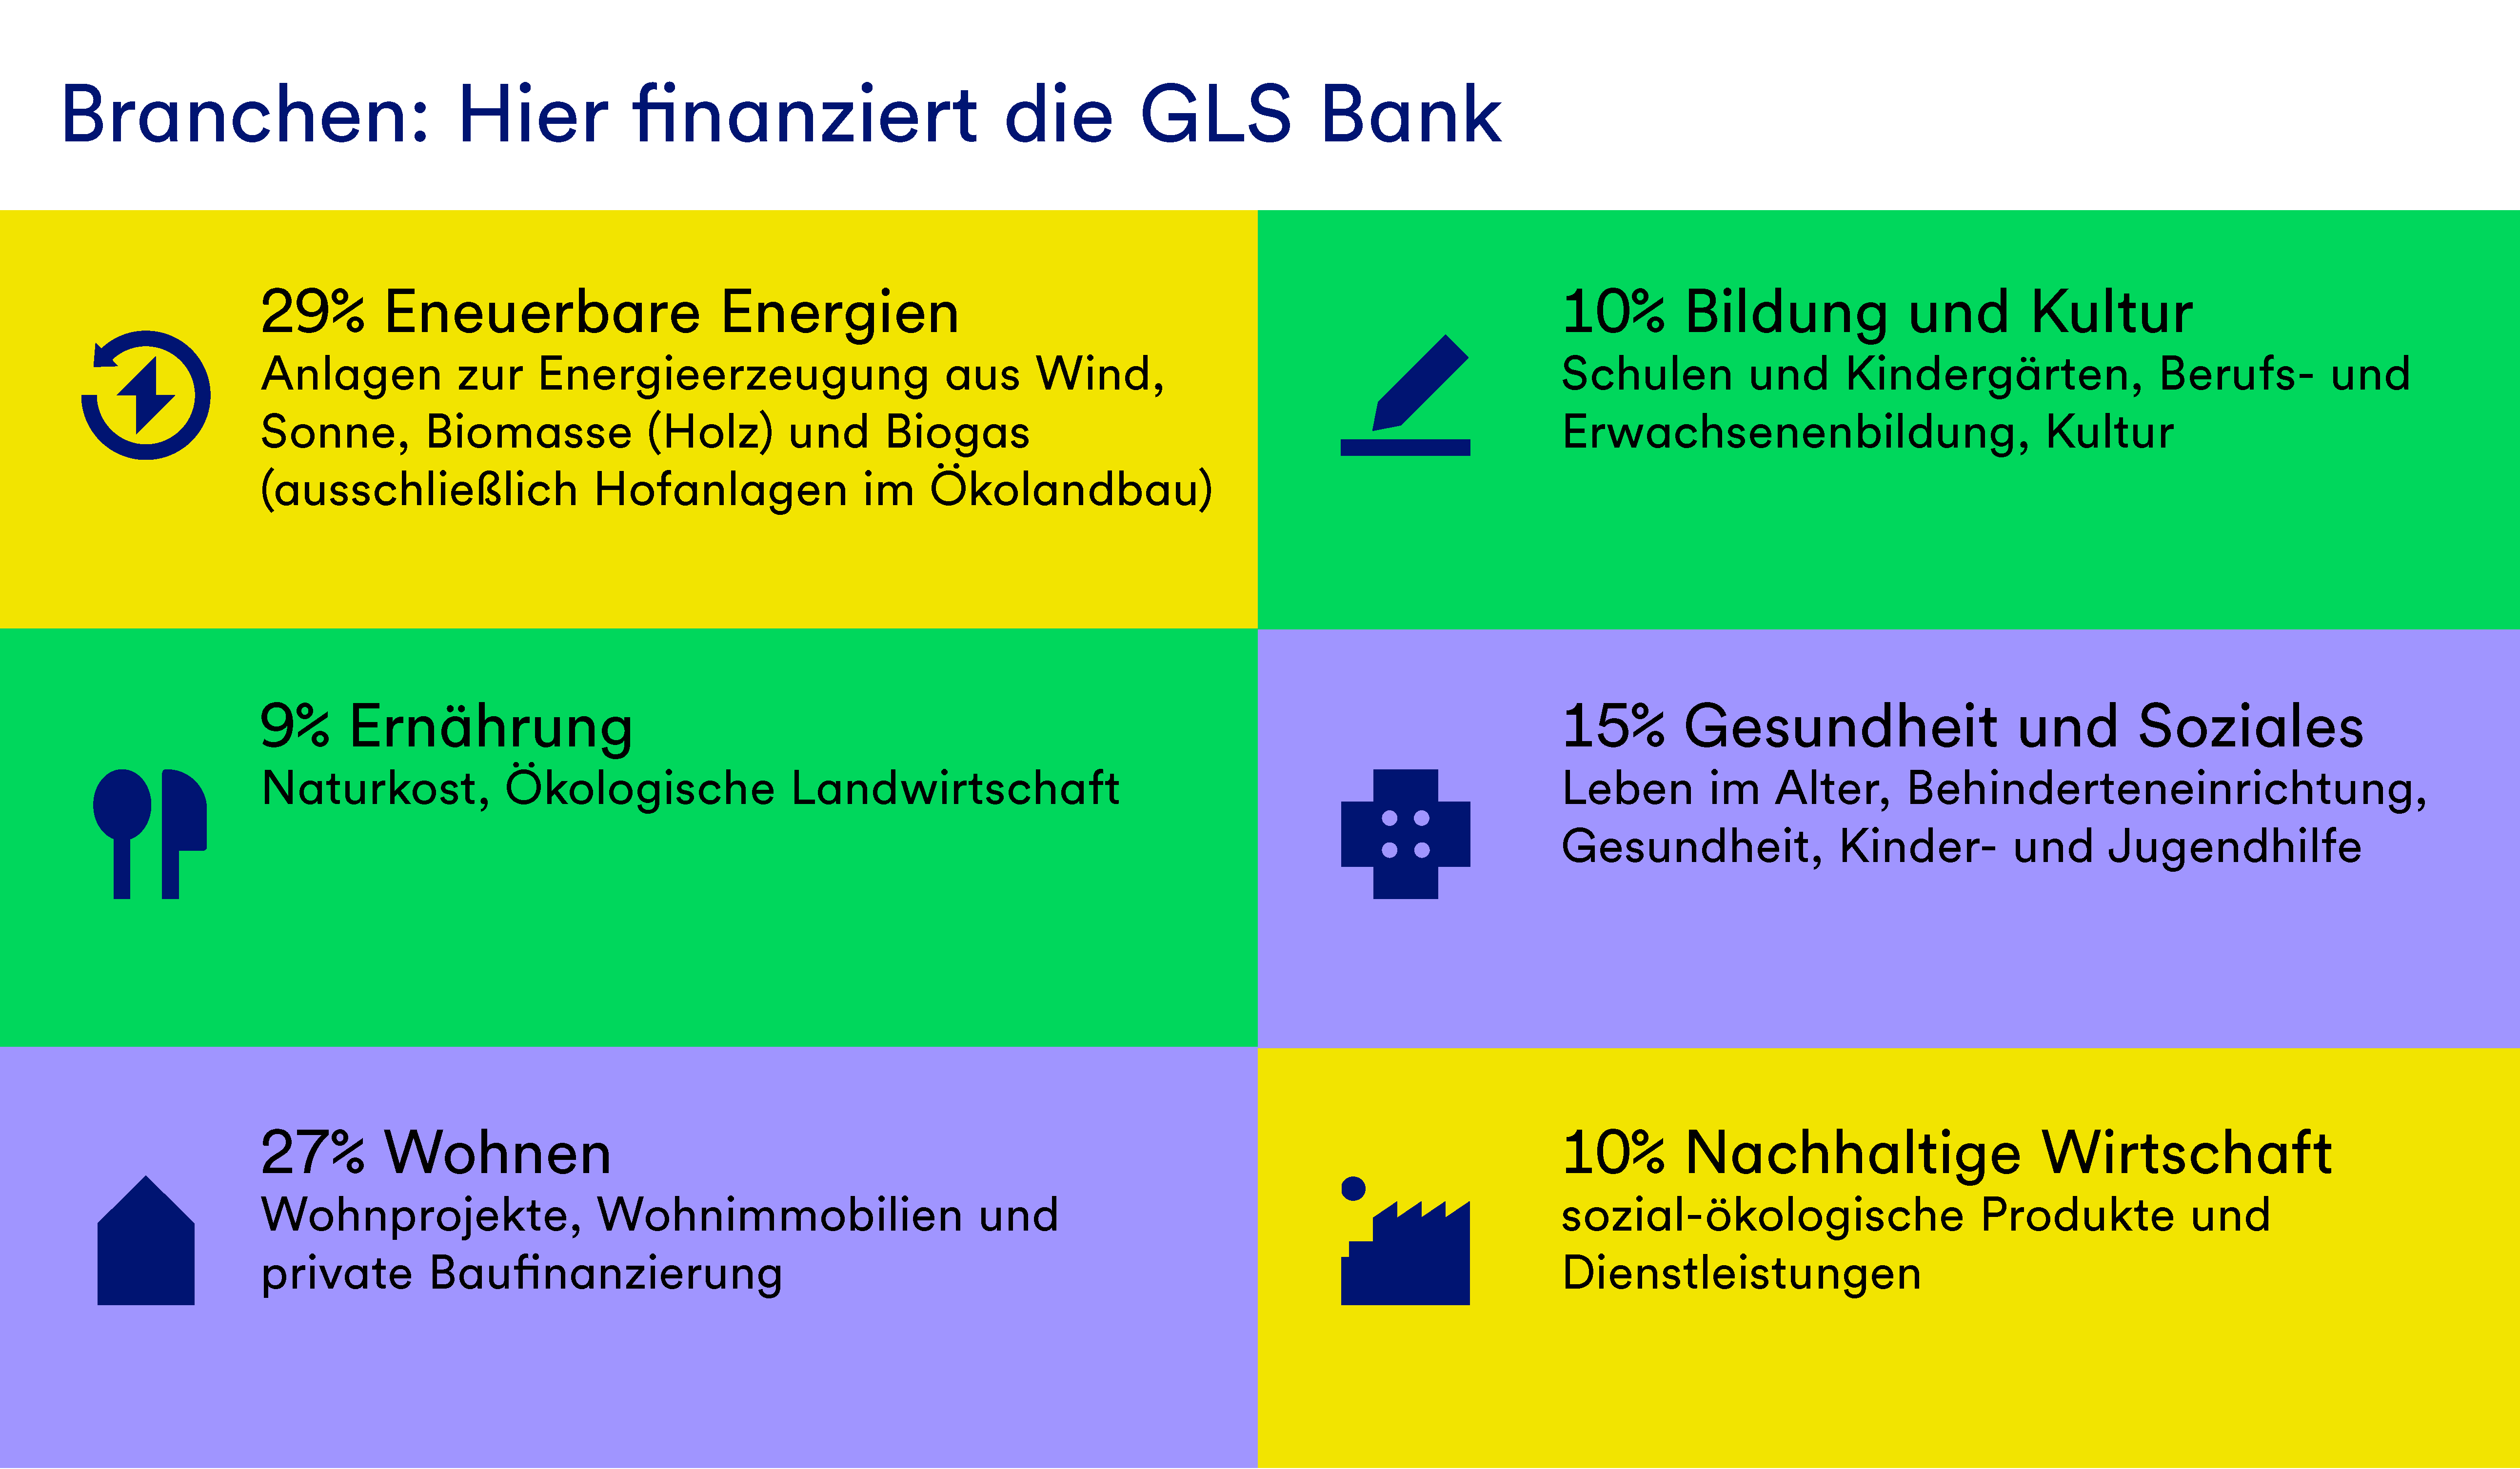 Eine Grafik mit Kacheln für die sechs Branchen der GLS Bank. Der Titel lautet: "Branchen: Hier finanziert die GLS Bank". In Prozenten wird angegeben, wie das Volumen auf die Branchen aufgeteilt wird.